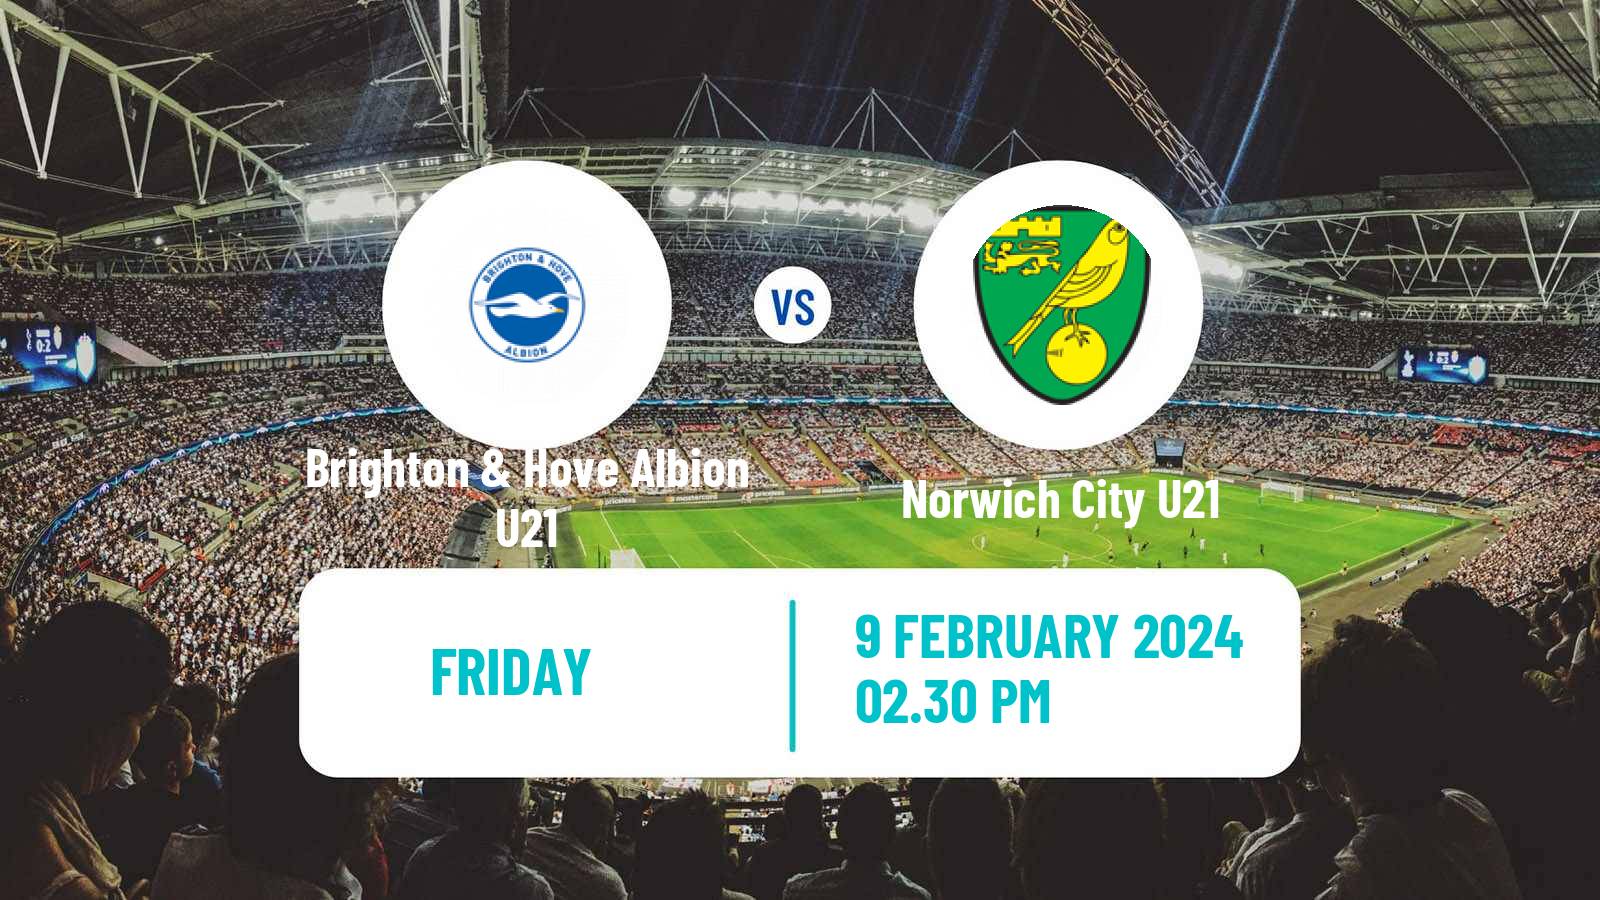 Soccer English Premier League 2 Brighton & Hove Albion U21 - Norwich City U21